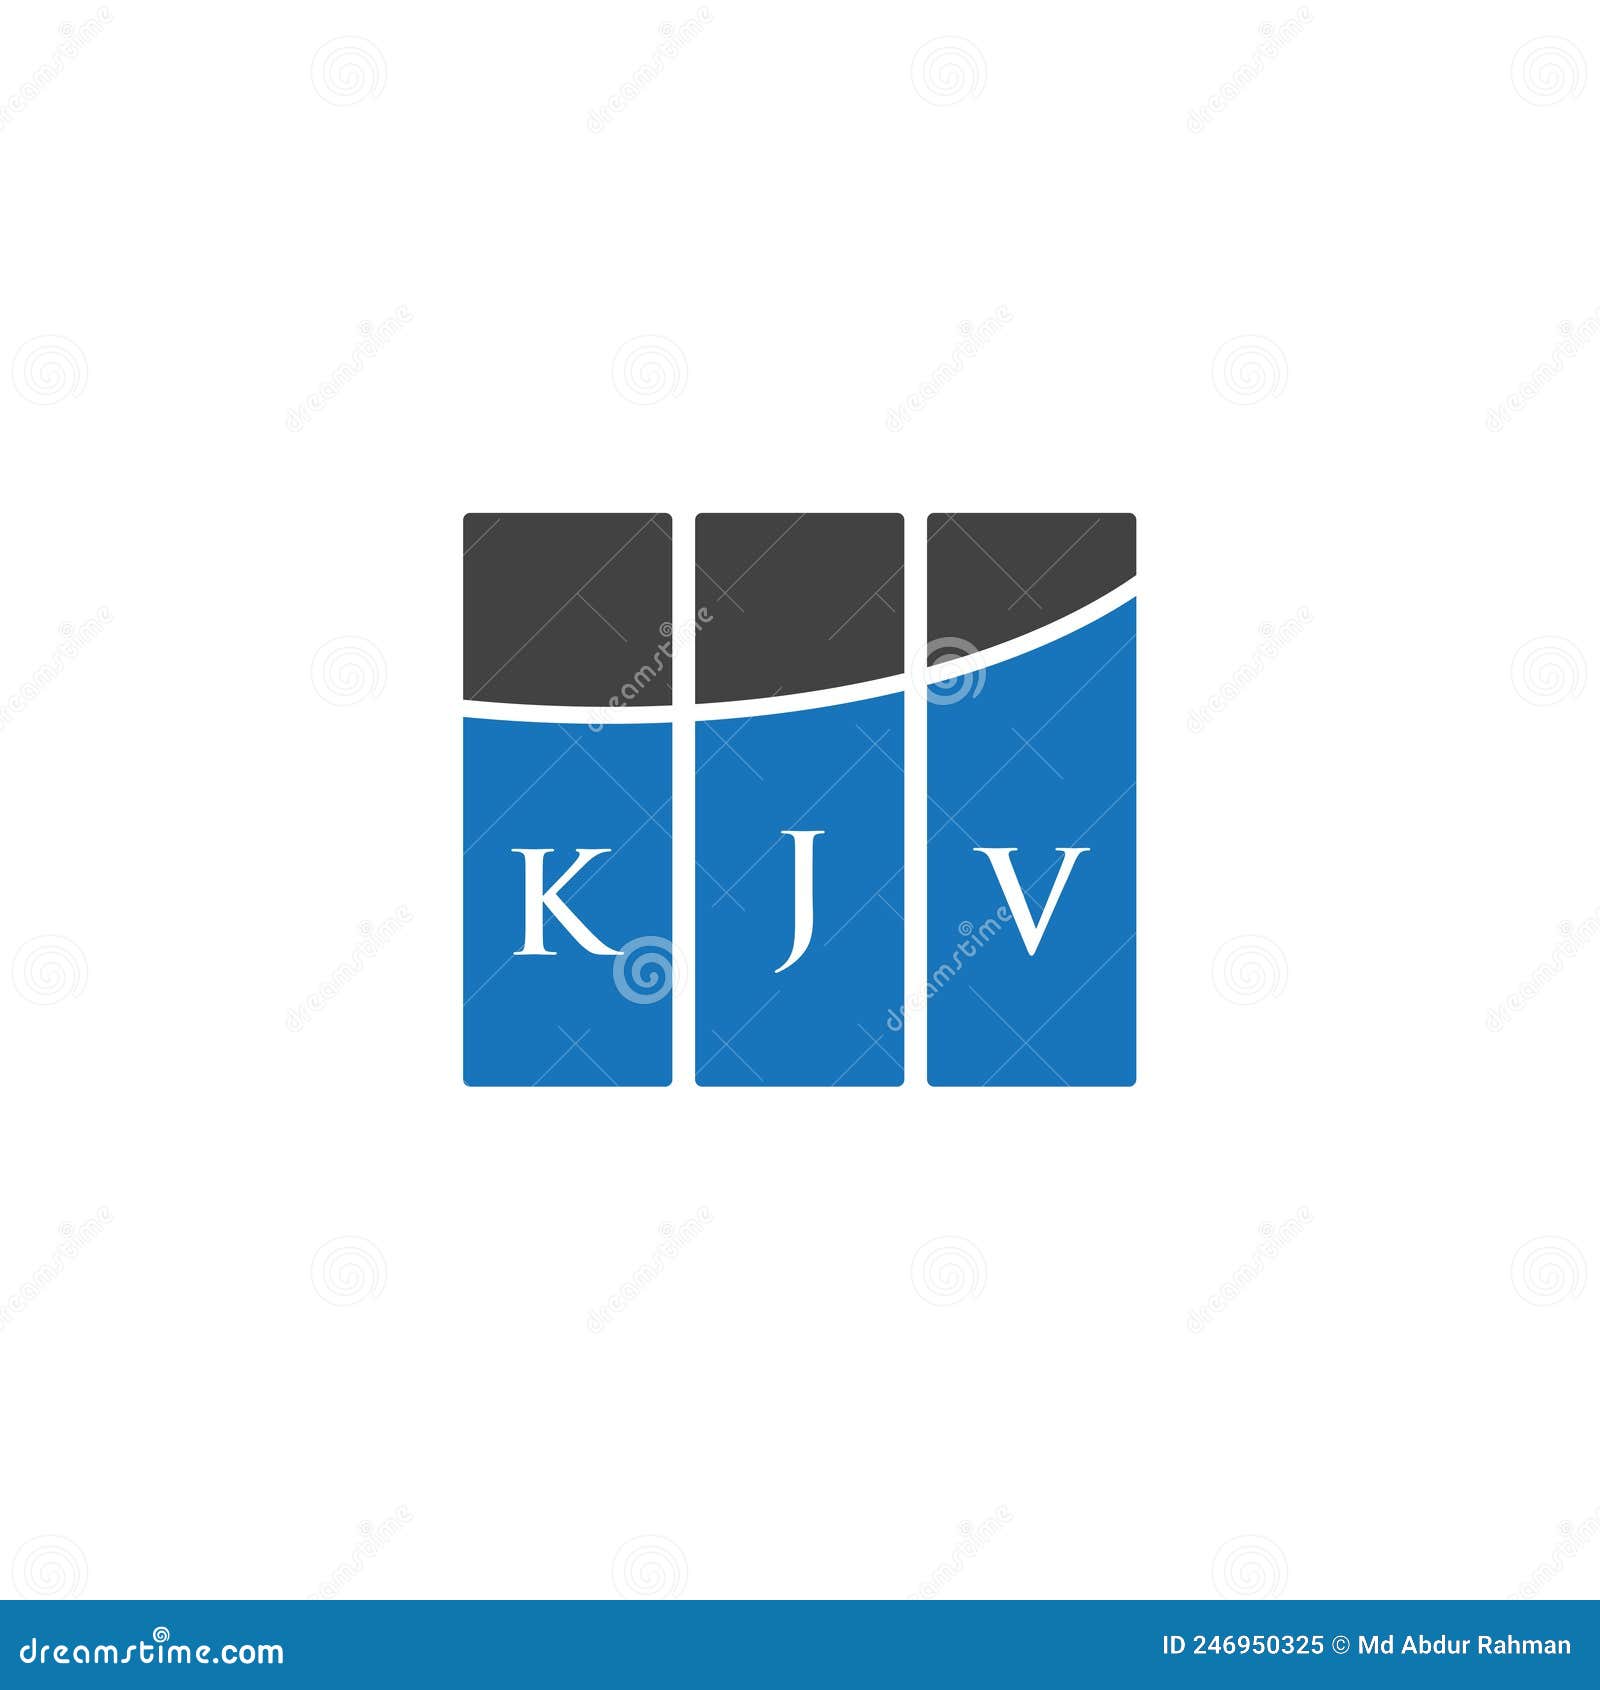 kjv letter logo  on black background. kjv creative initials letter logo concept. kjv letter .